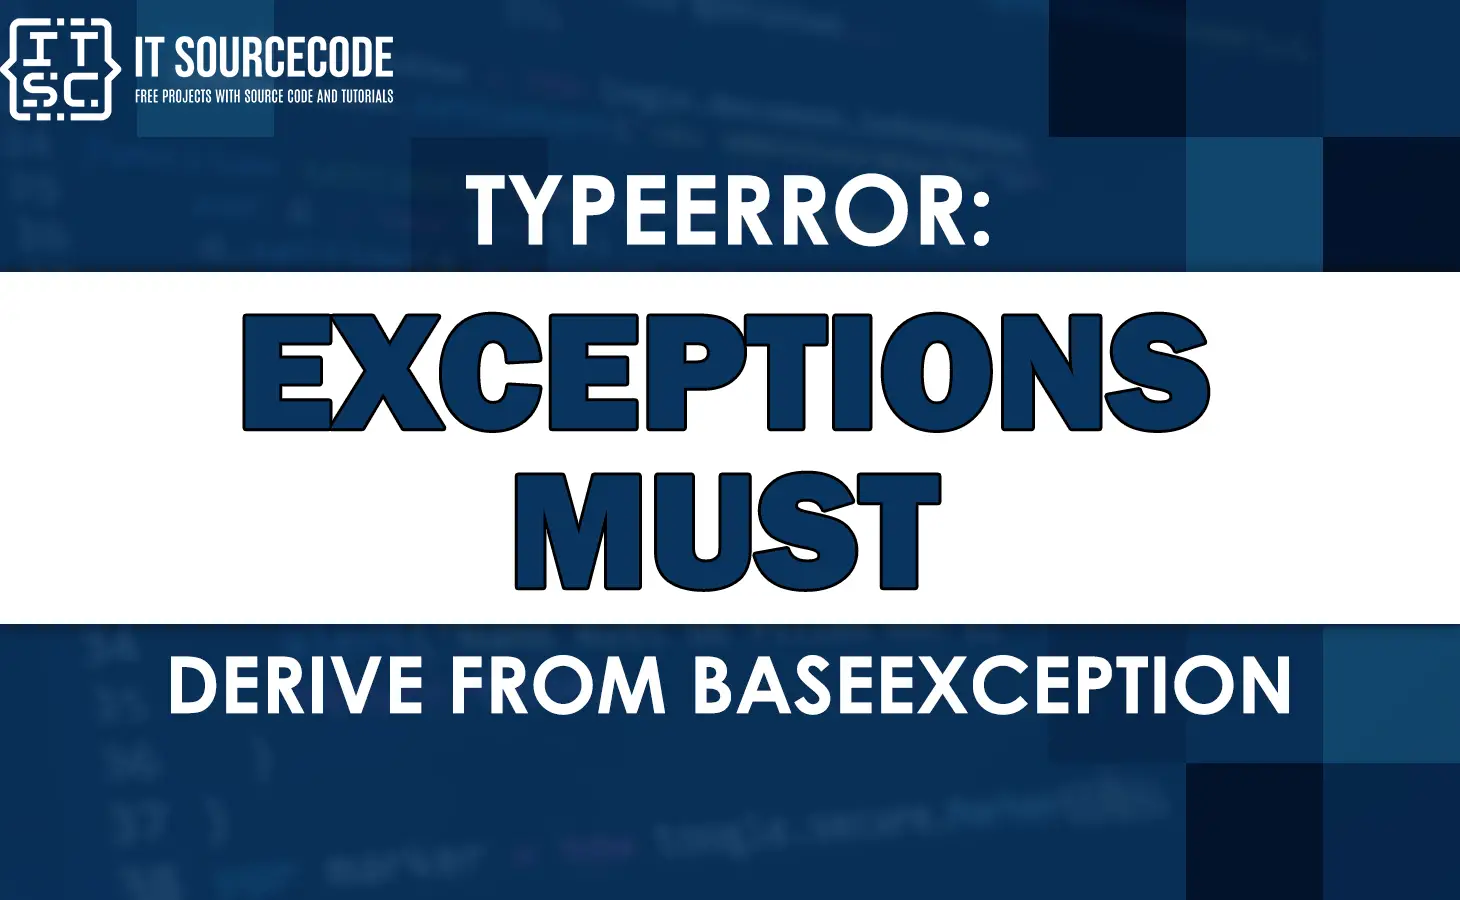 Python Neural Network : TypeError: exceptions must derive from BaseException  - Stack Overflow